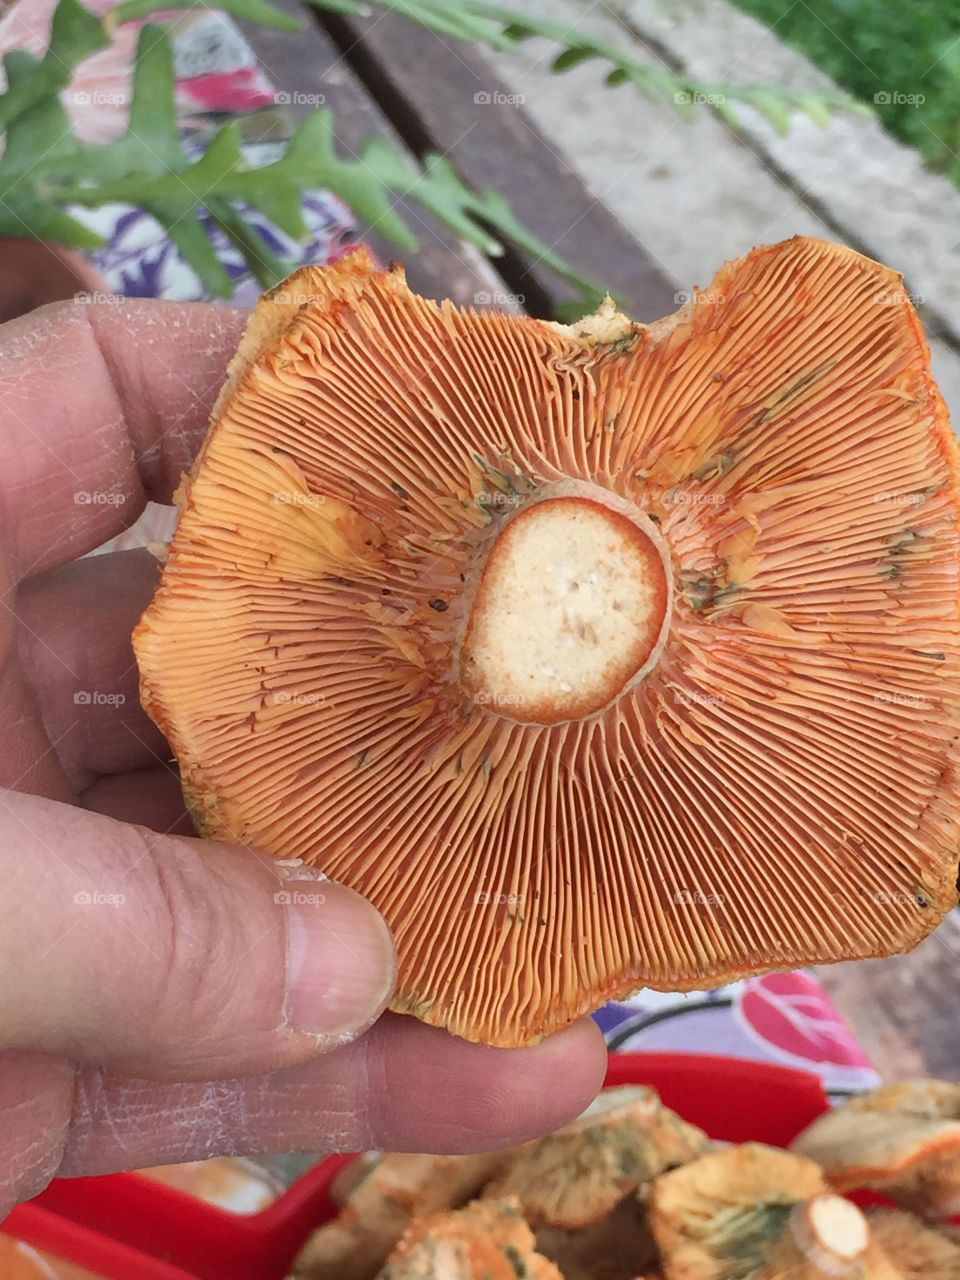 Chartarelle mushroom